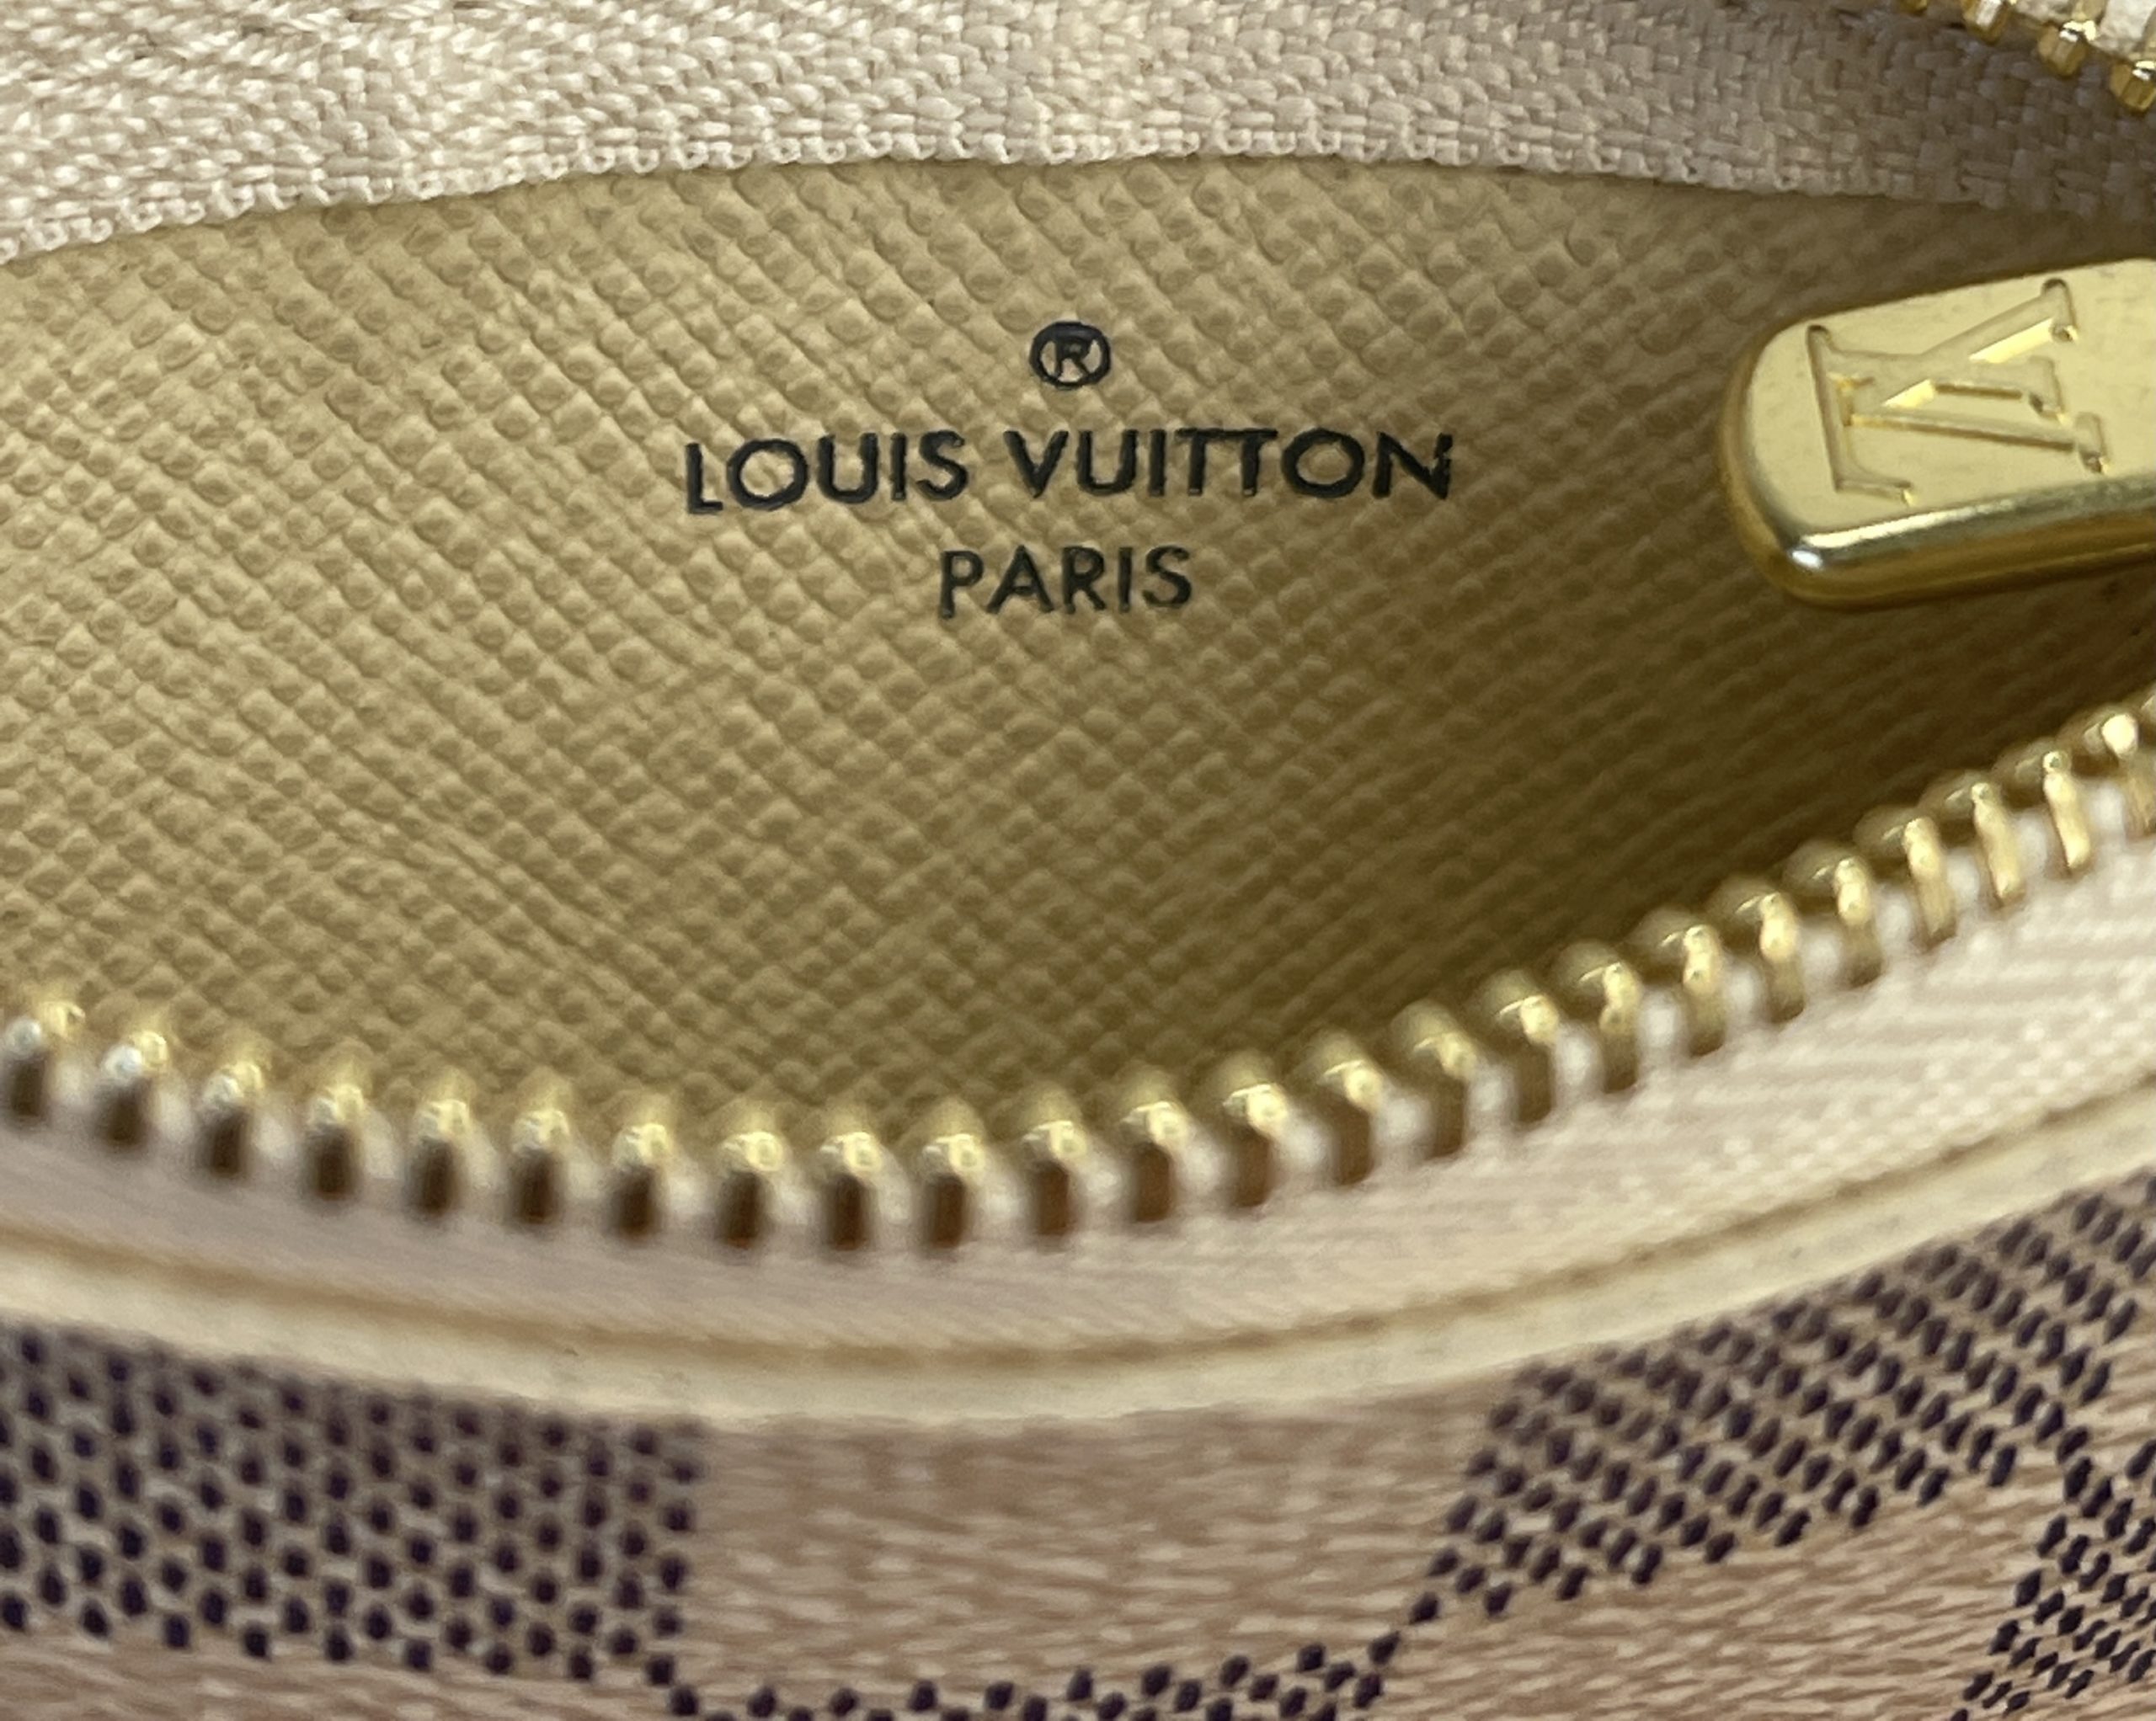 Louis Vuitton Key Pouch Cles - Damier Azur